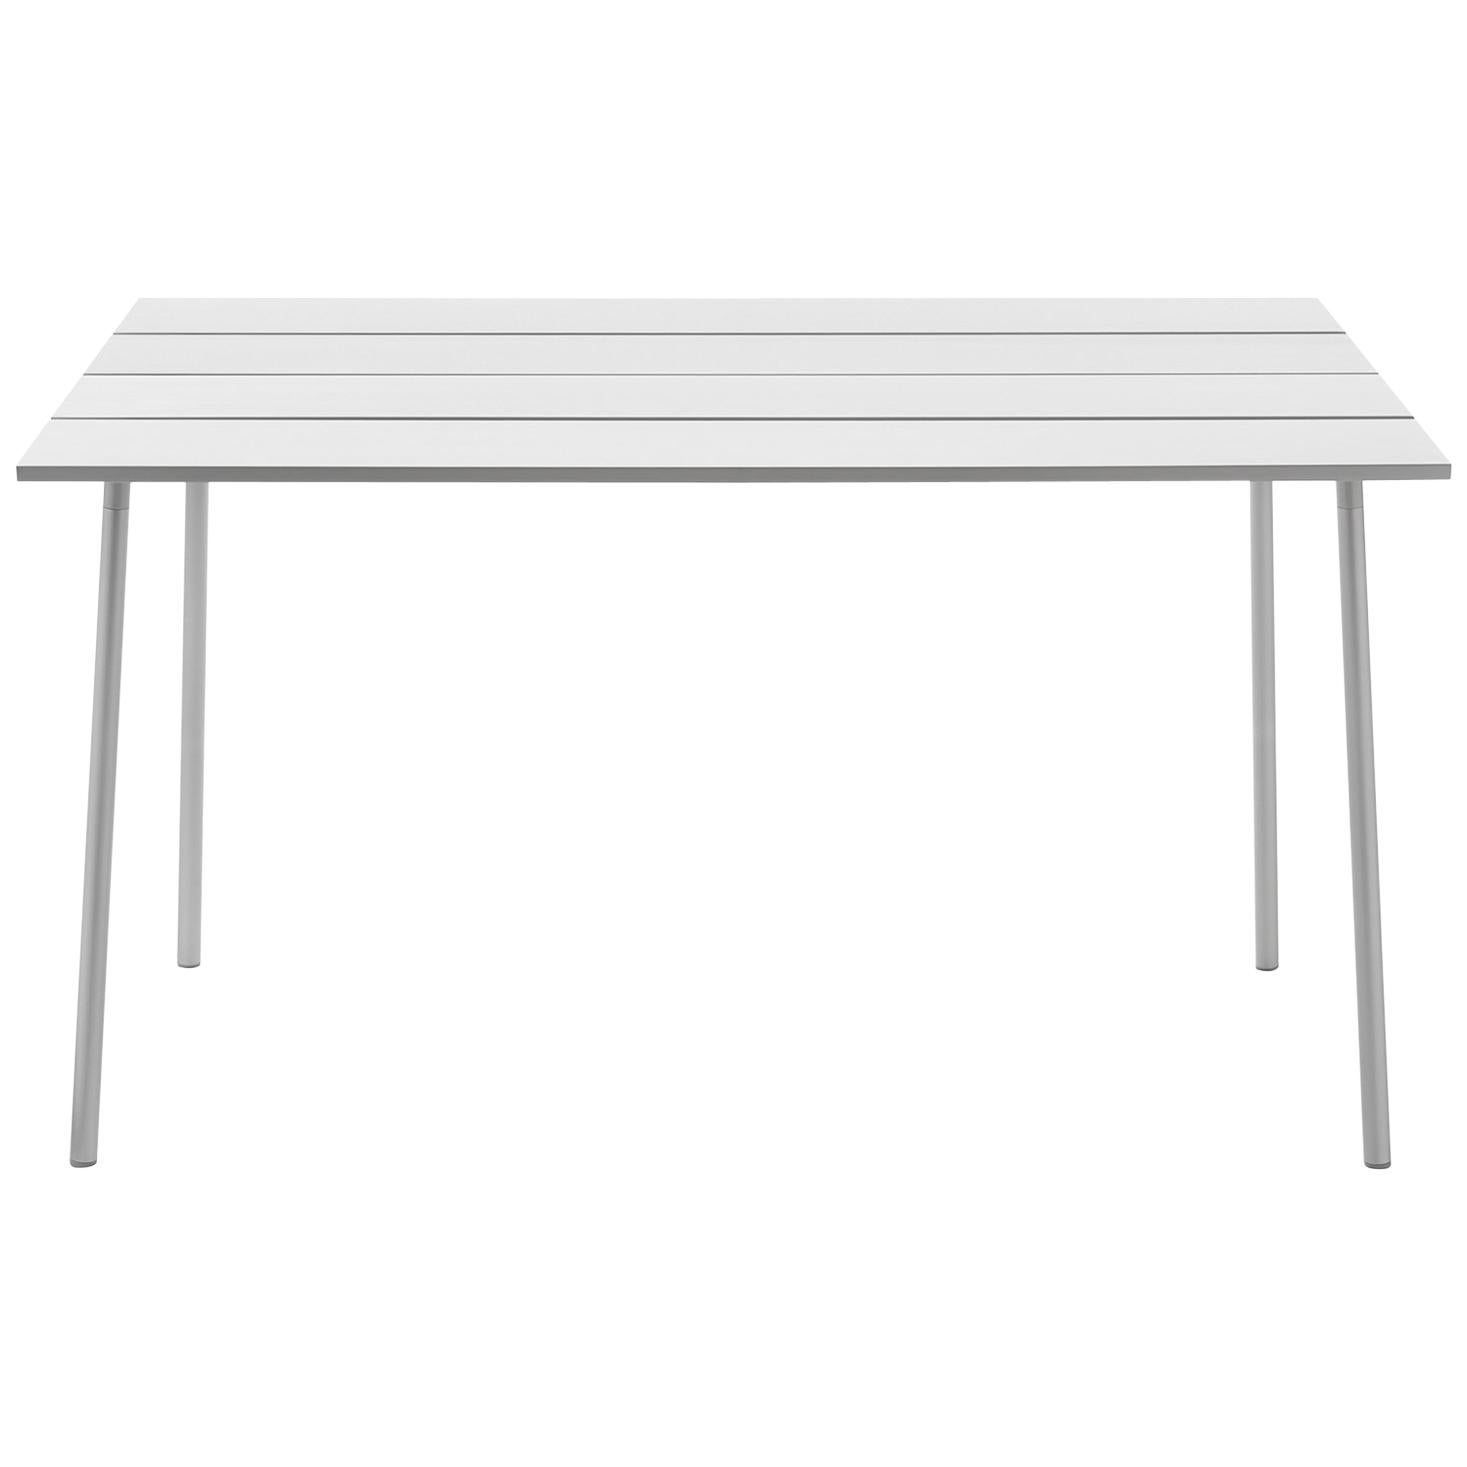 Emeco Run, großer hoher Tisch aus eloxiertem Aluminium von Sam Hecht & Kim Colin